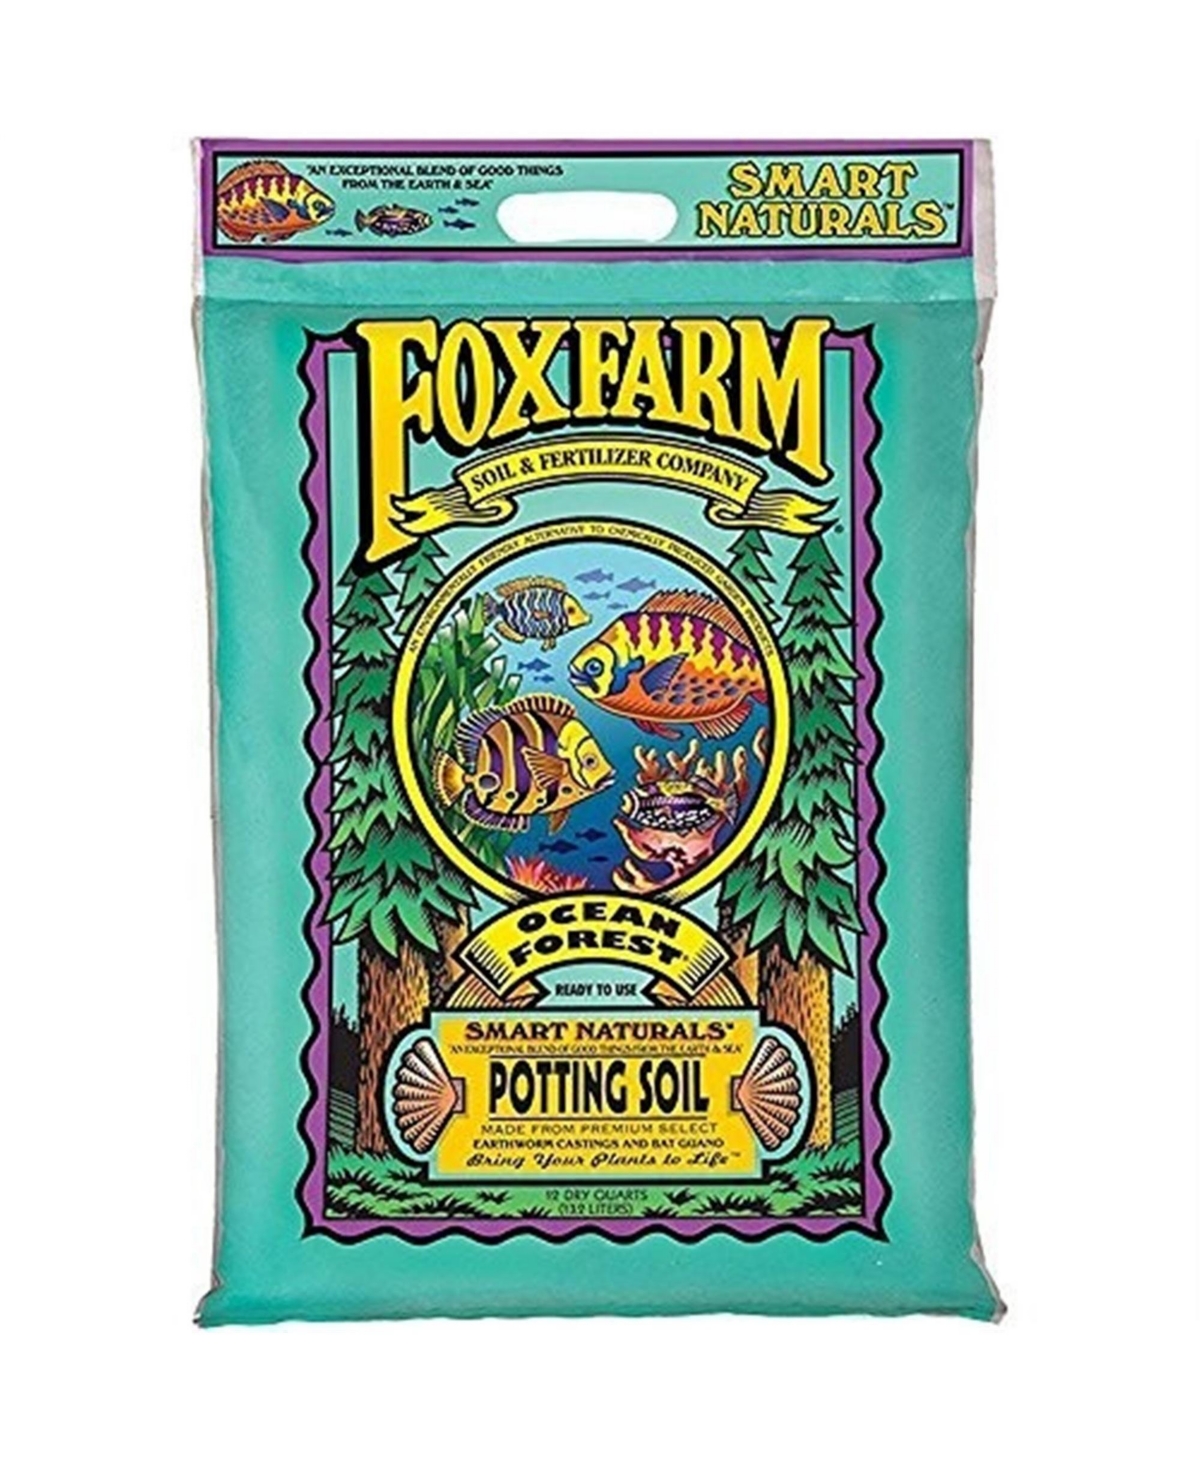 Fox Farm (#FX14053) Ocean Forest Potting Soil, 12-Quart (Pack of 1) - Multi